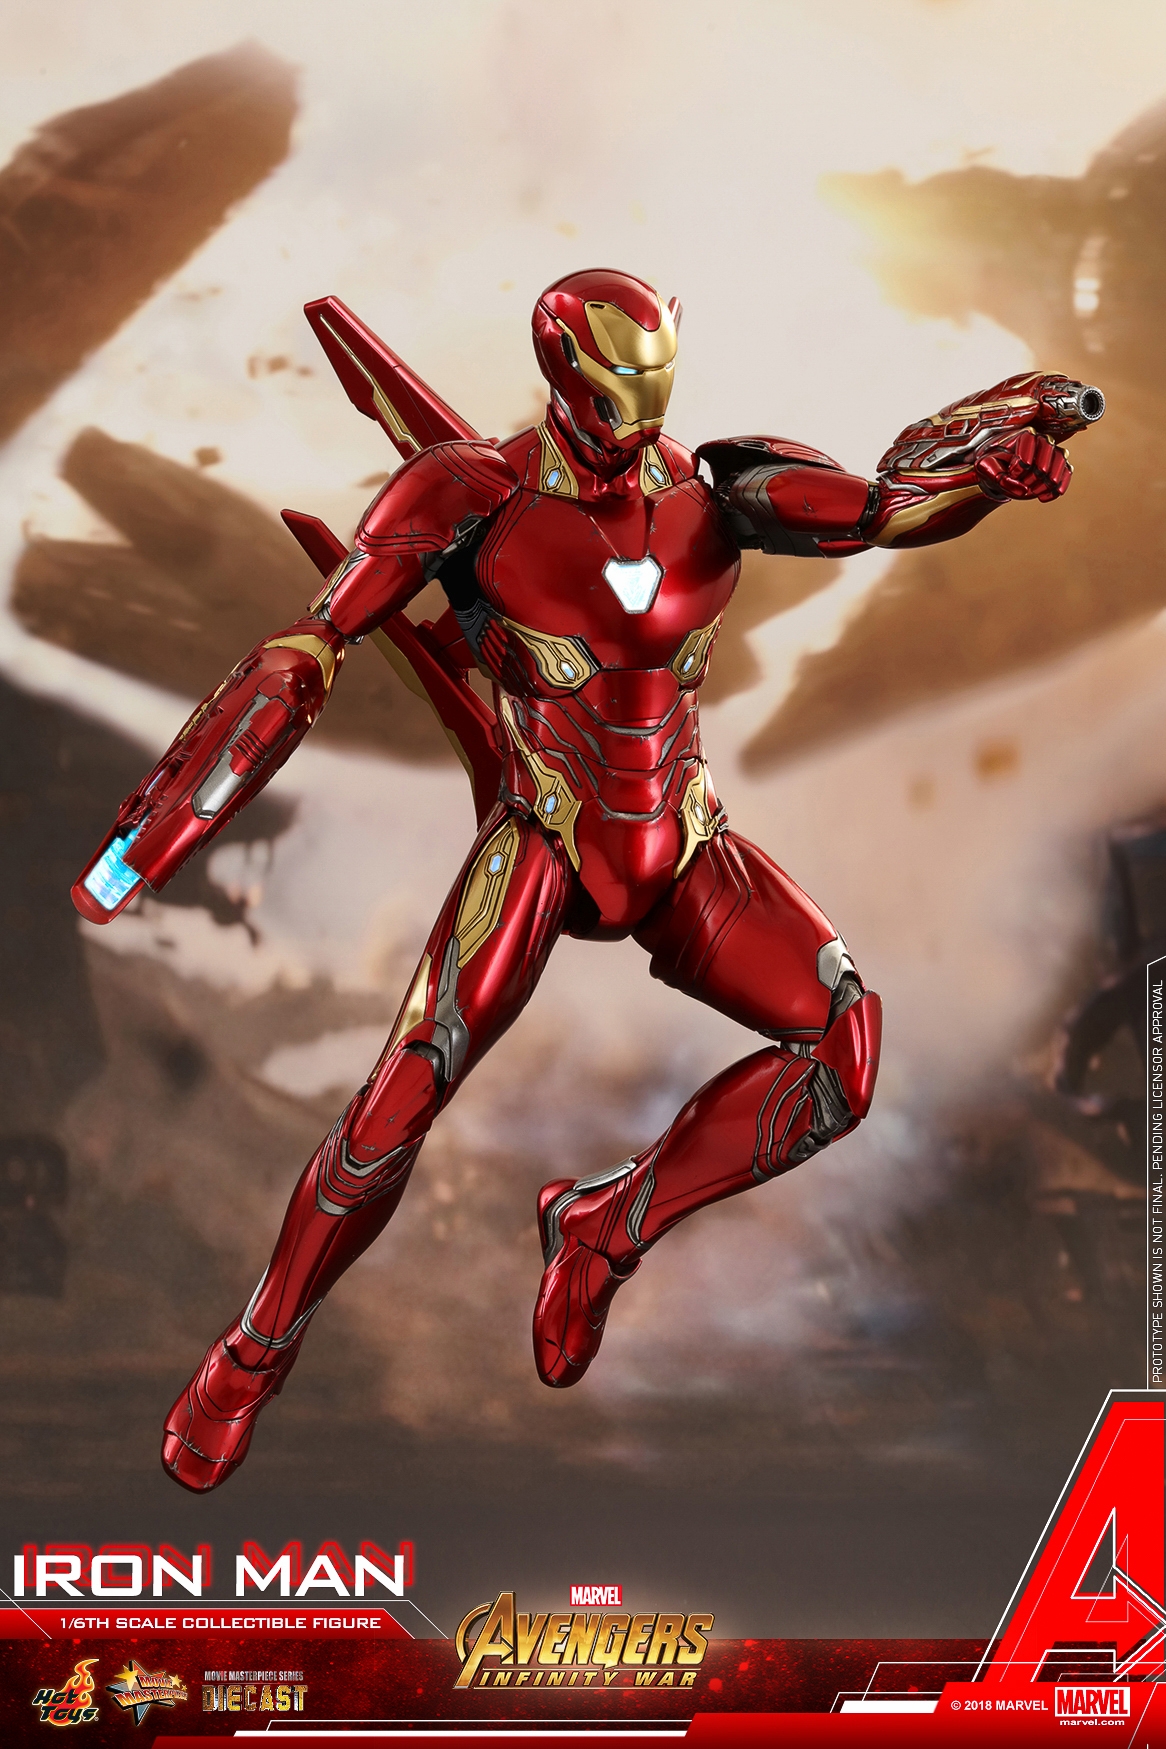 Hot-Toys-MMS473D23-Avengers-Infinity-War-Iron-Man-Collectible-Figure-004.jpg